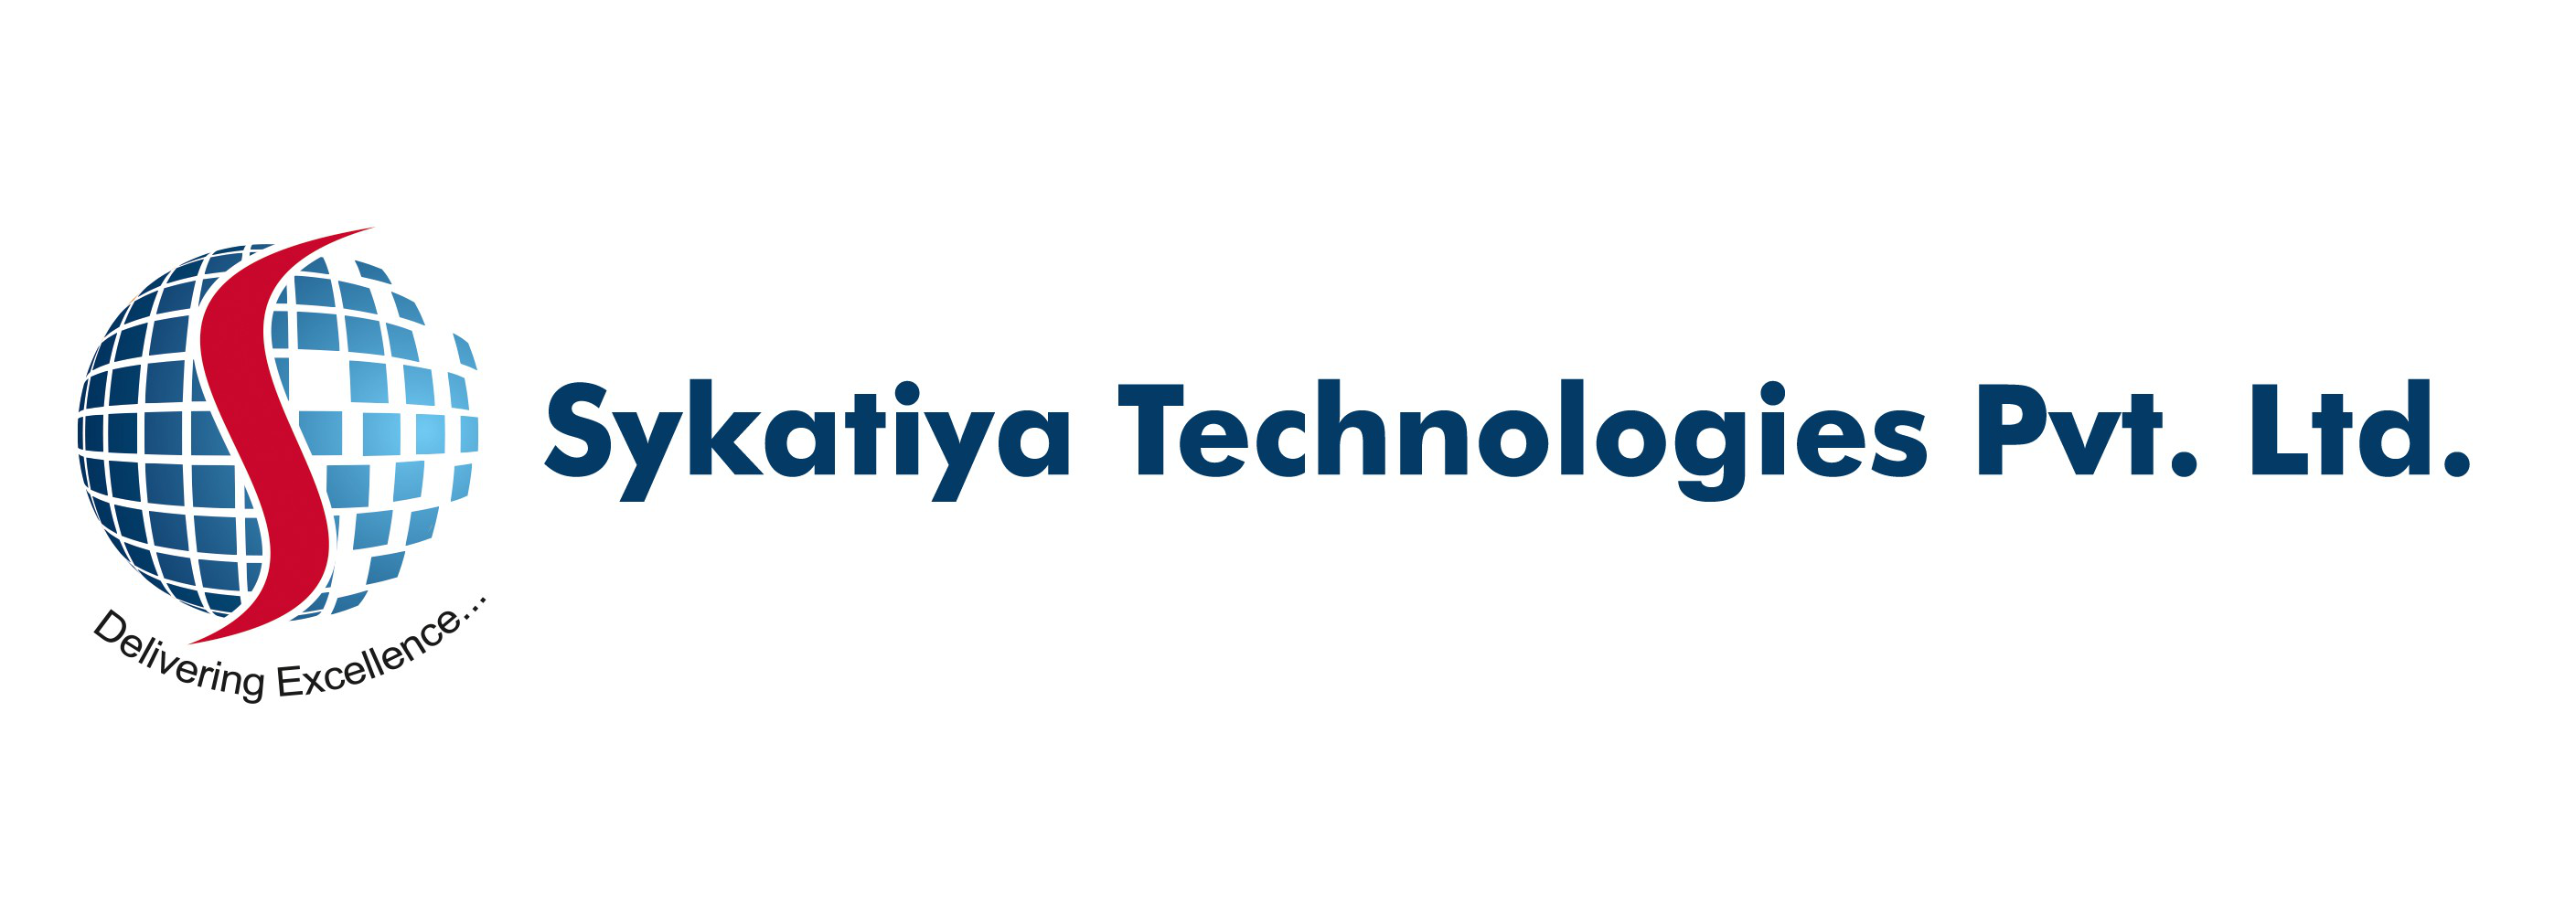 sykatiya Technologies pvt ltd